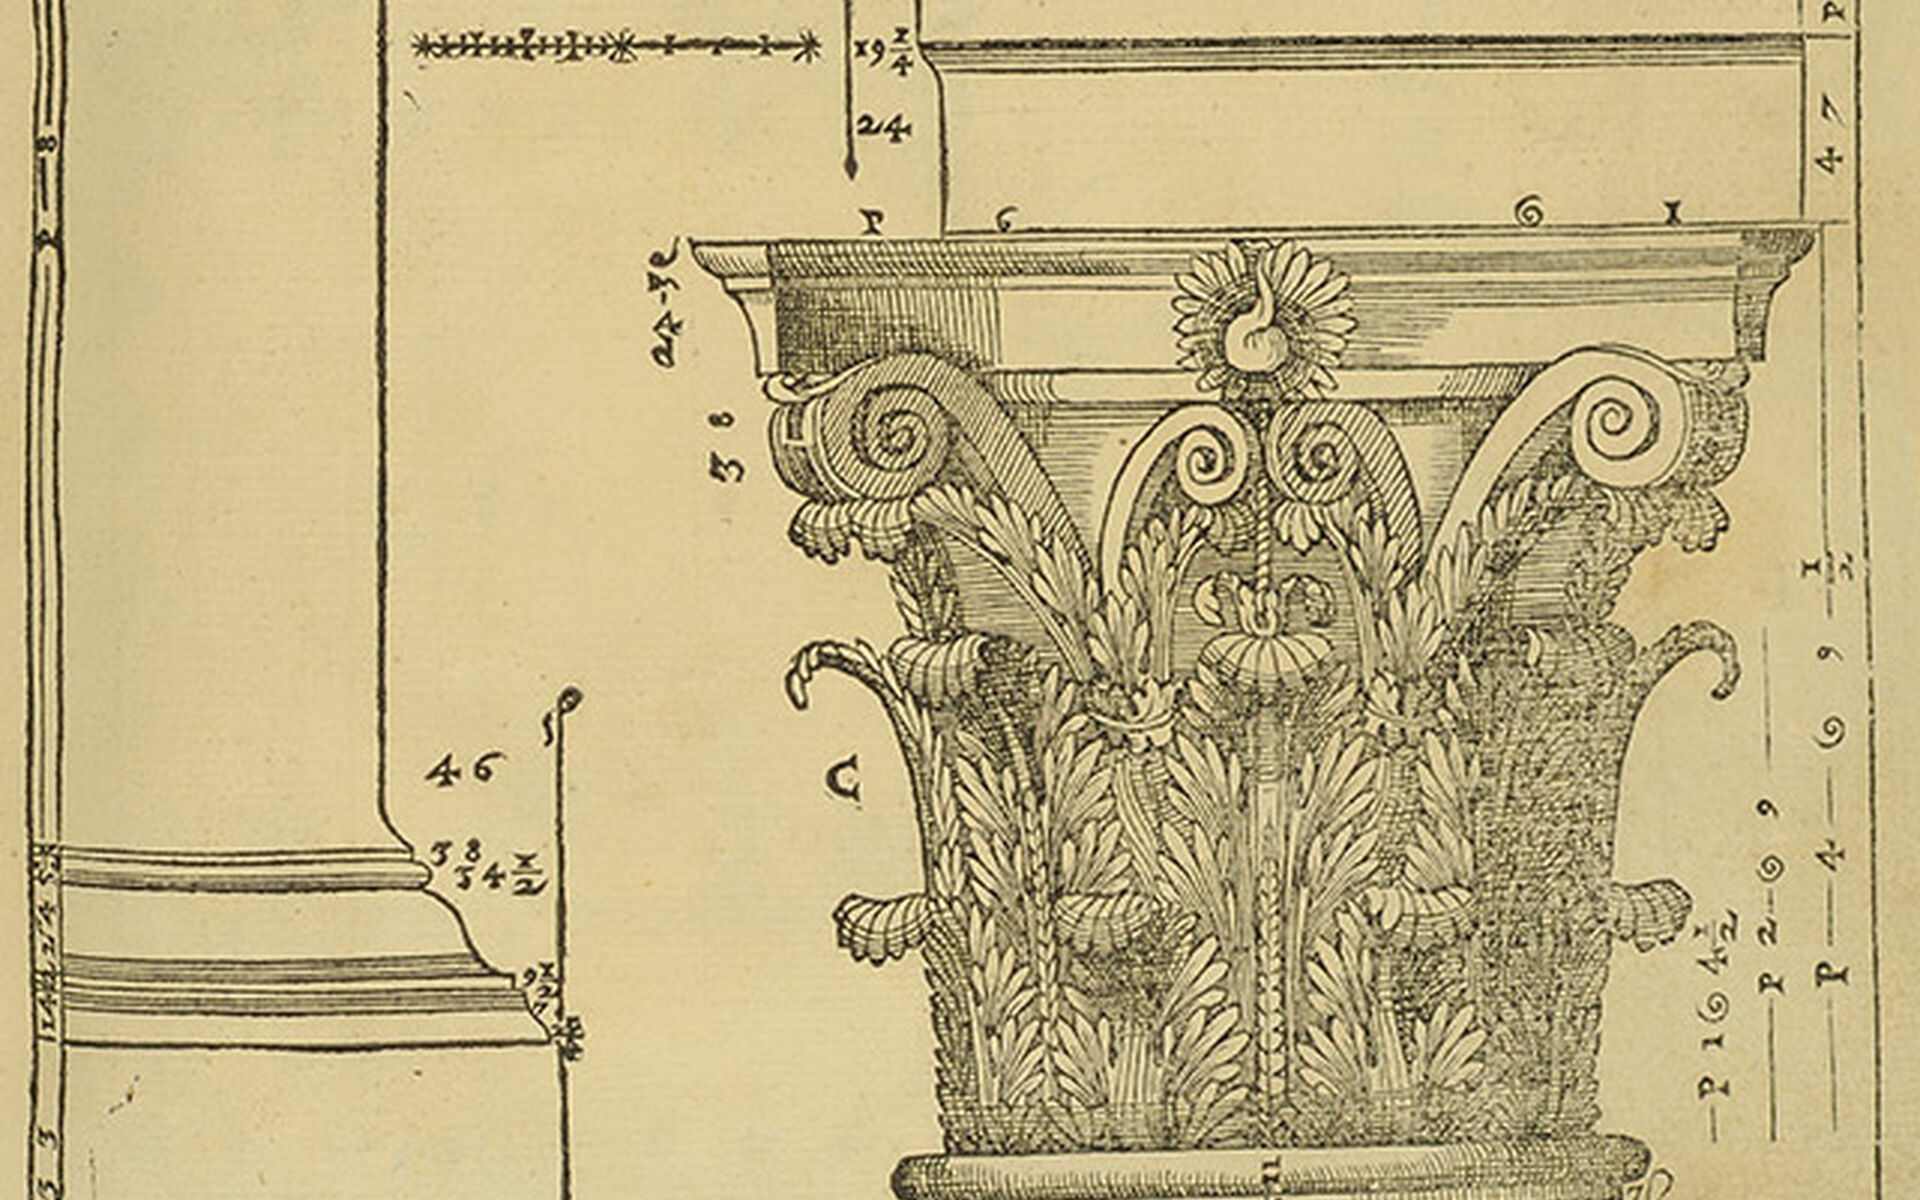 Andrea Palladio Kapitäl från I quattro libri dell'architettura